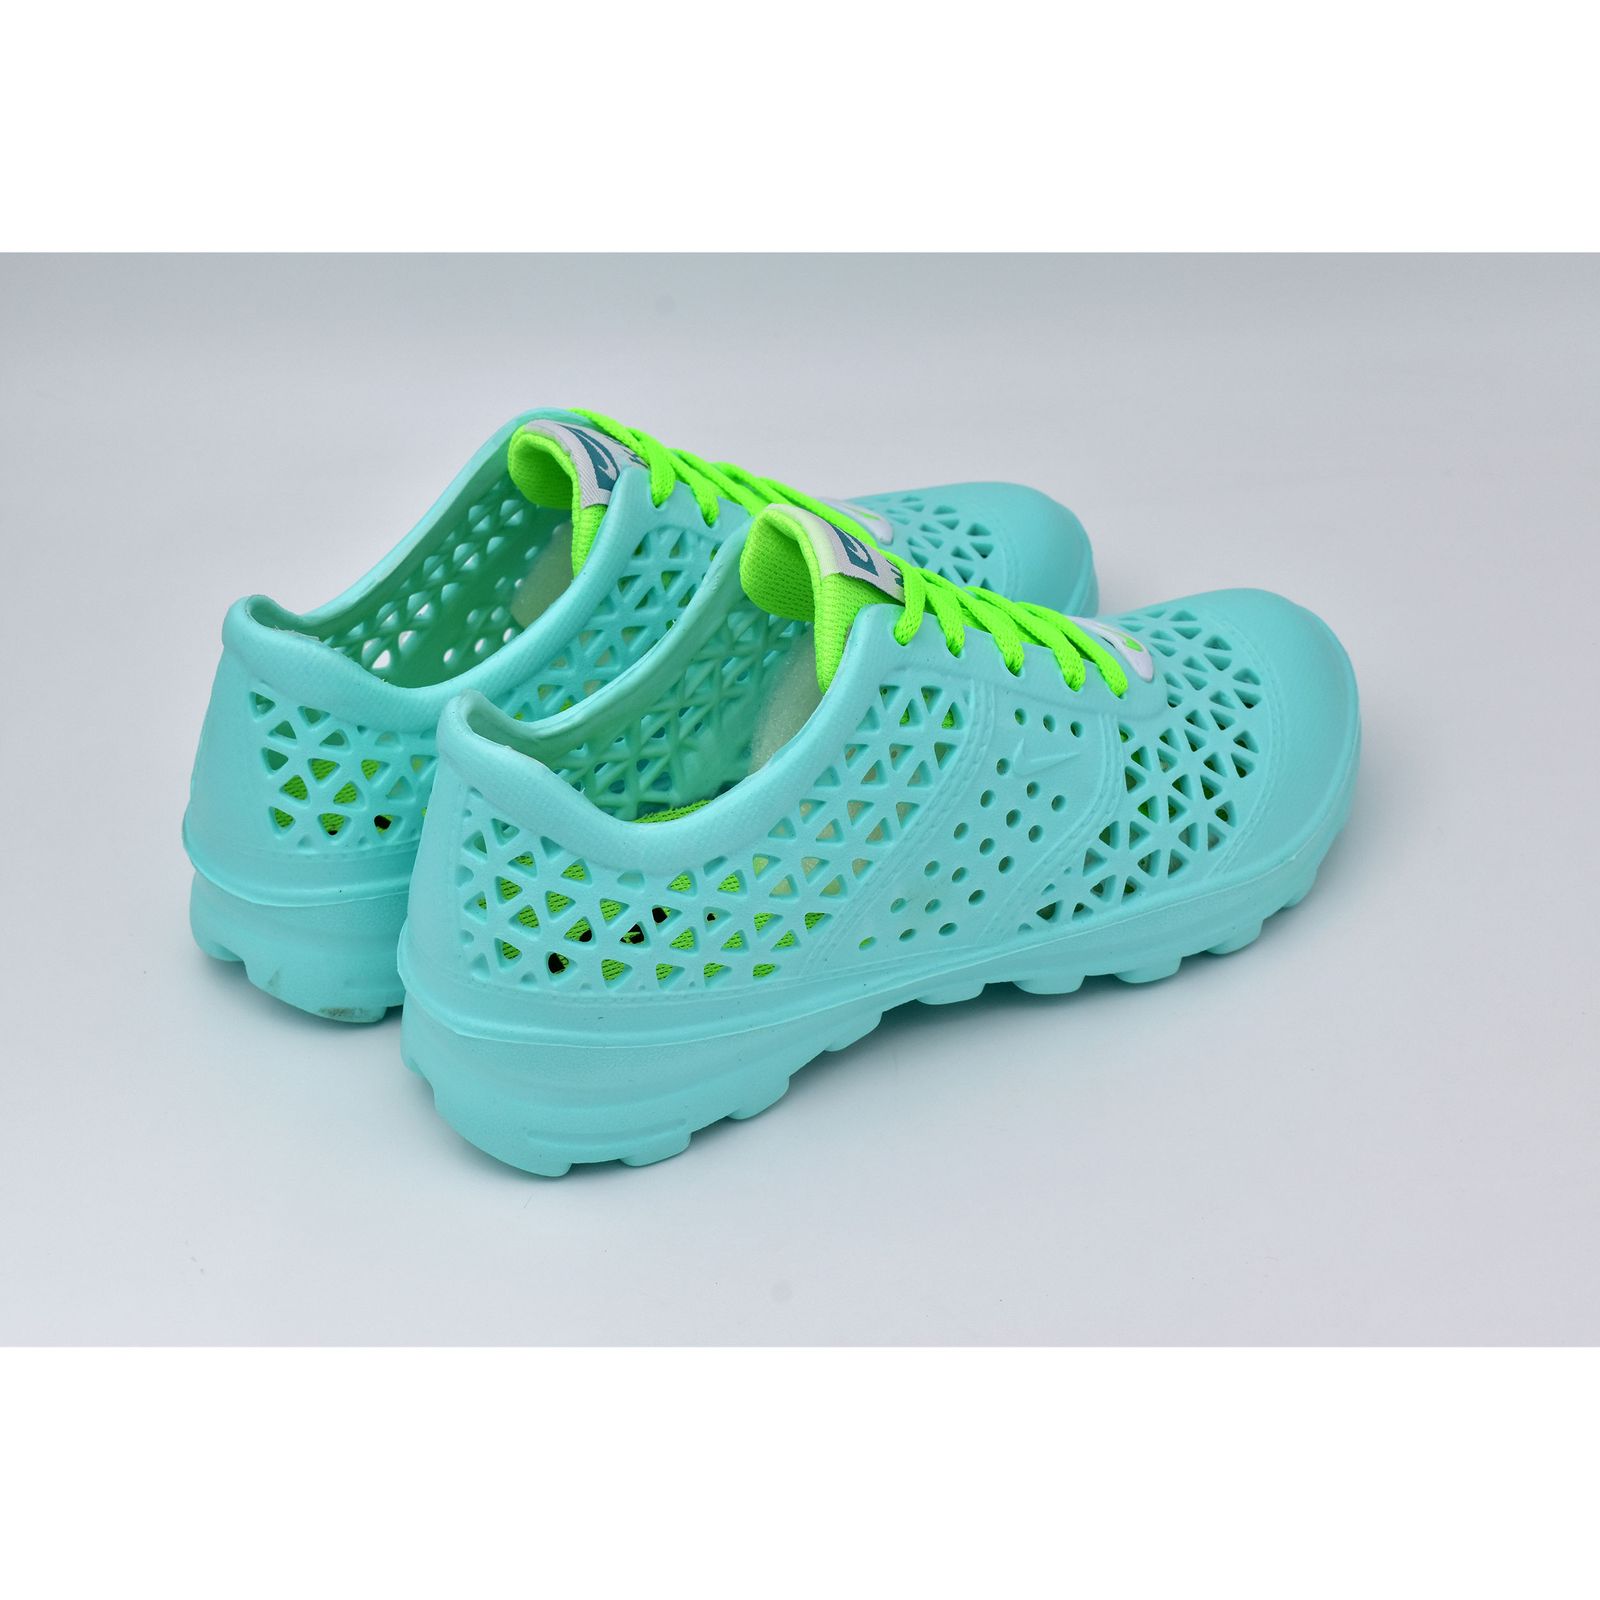  کفش ورزش های آبی زنانه نسیم مدل مرجان کد 8714 -  - 3